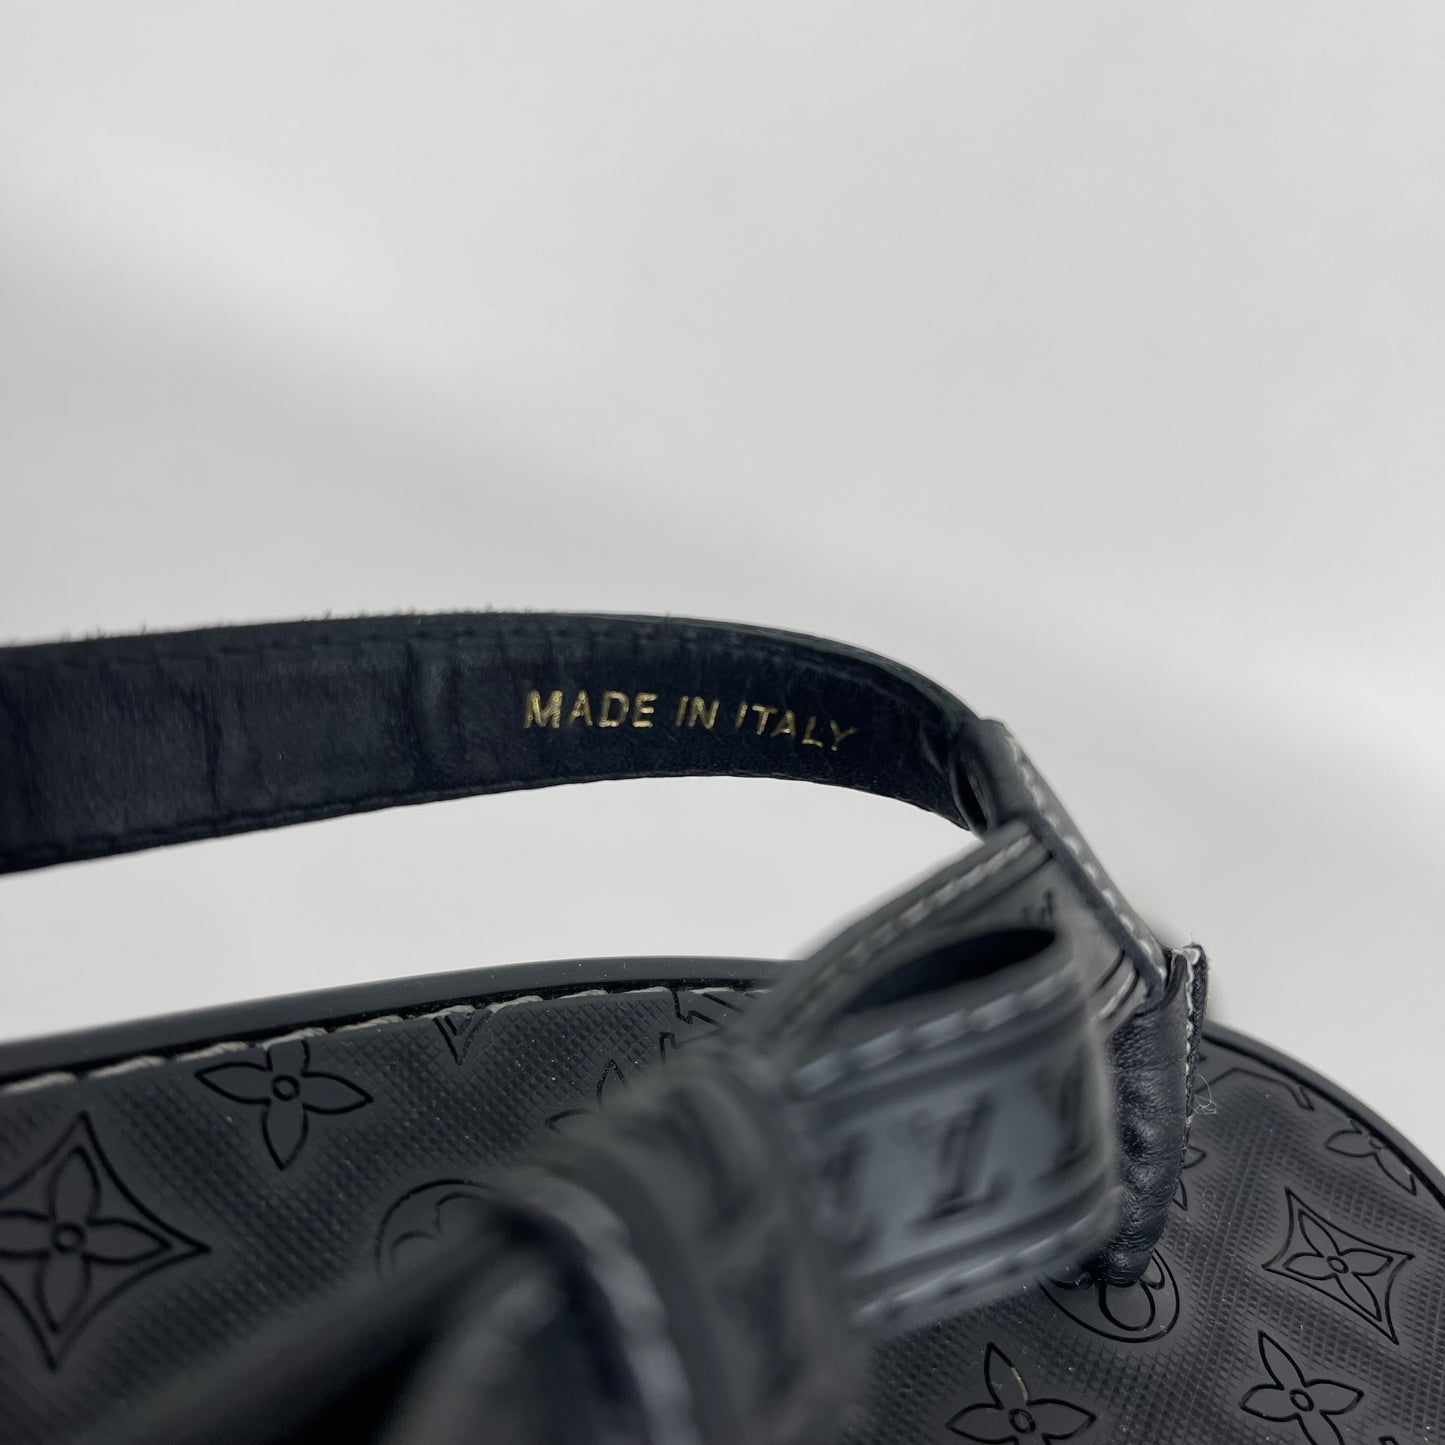 Authentic Louis Vuitton Black Rubber Flip Flops Sz 40